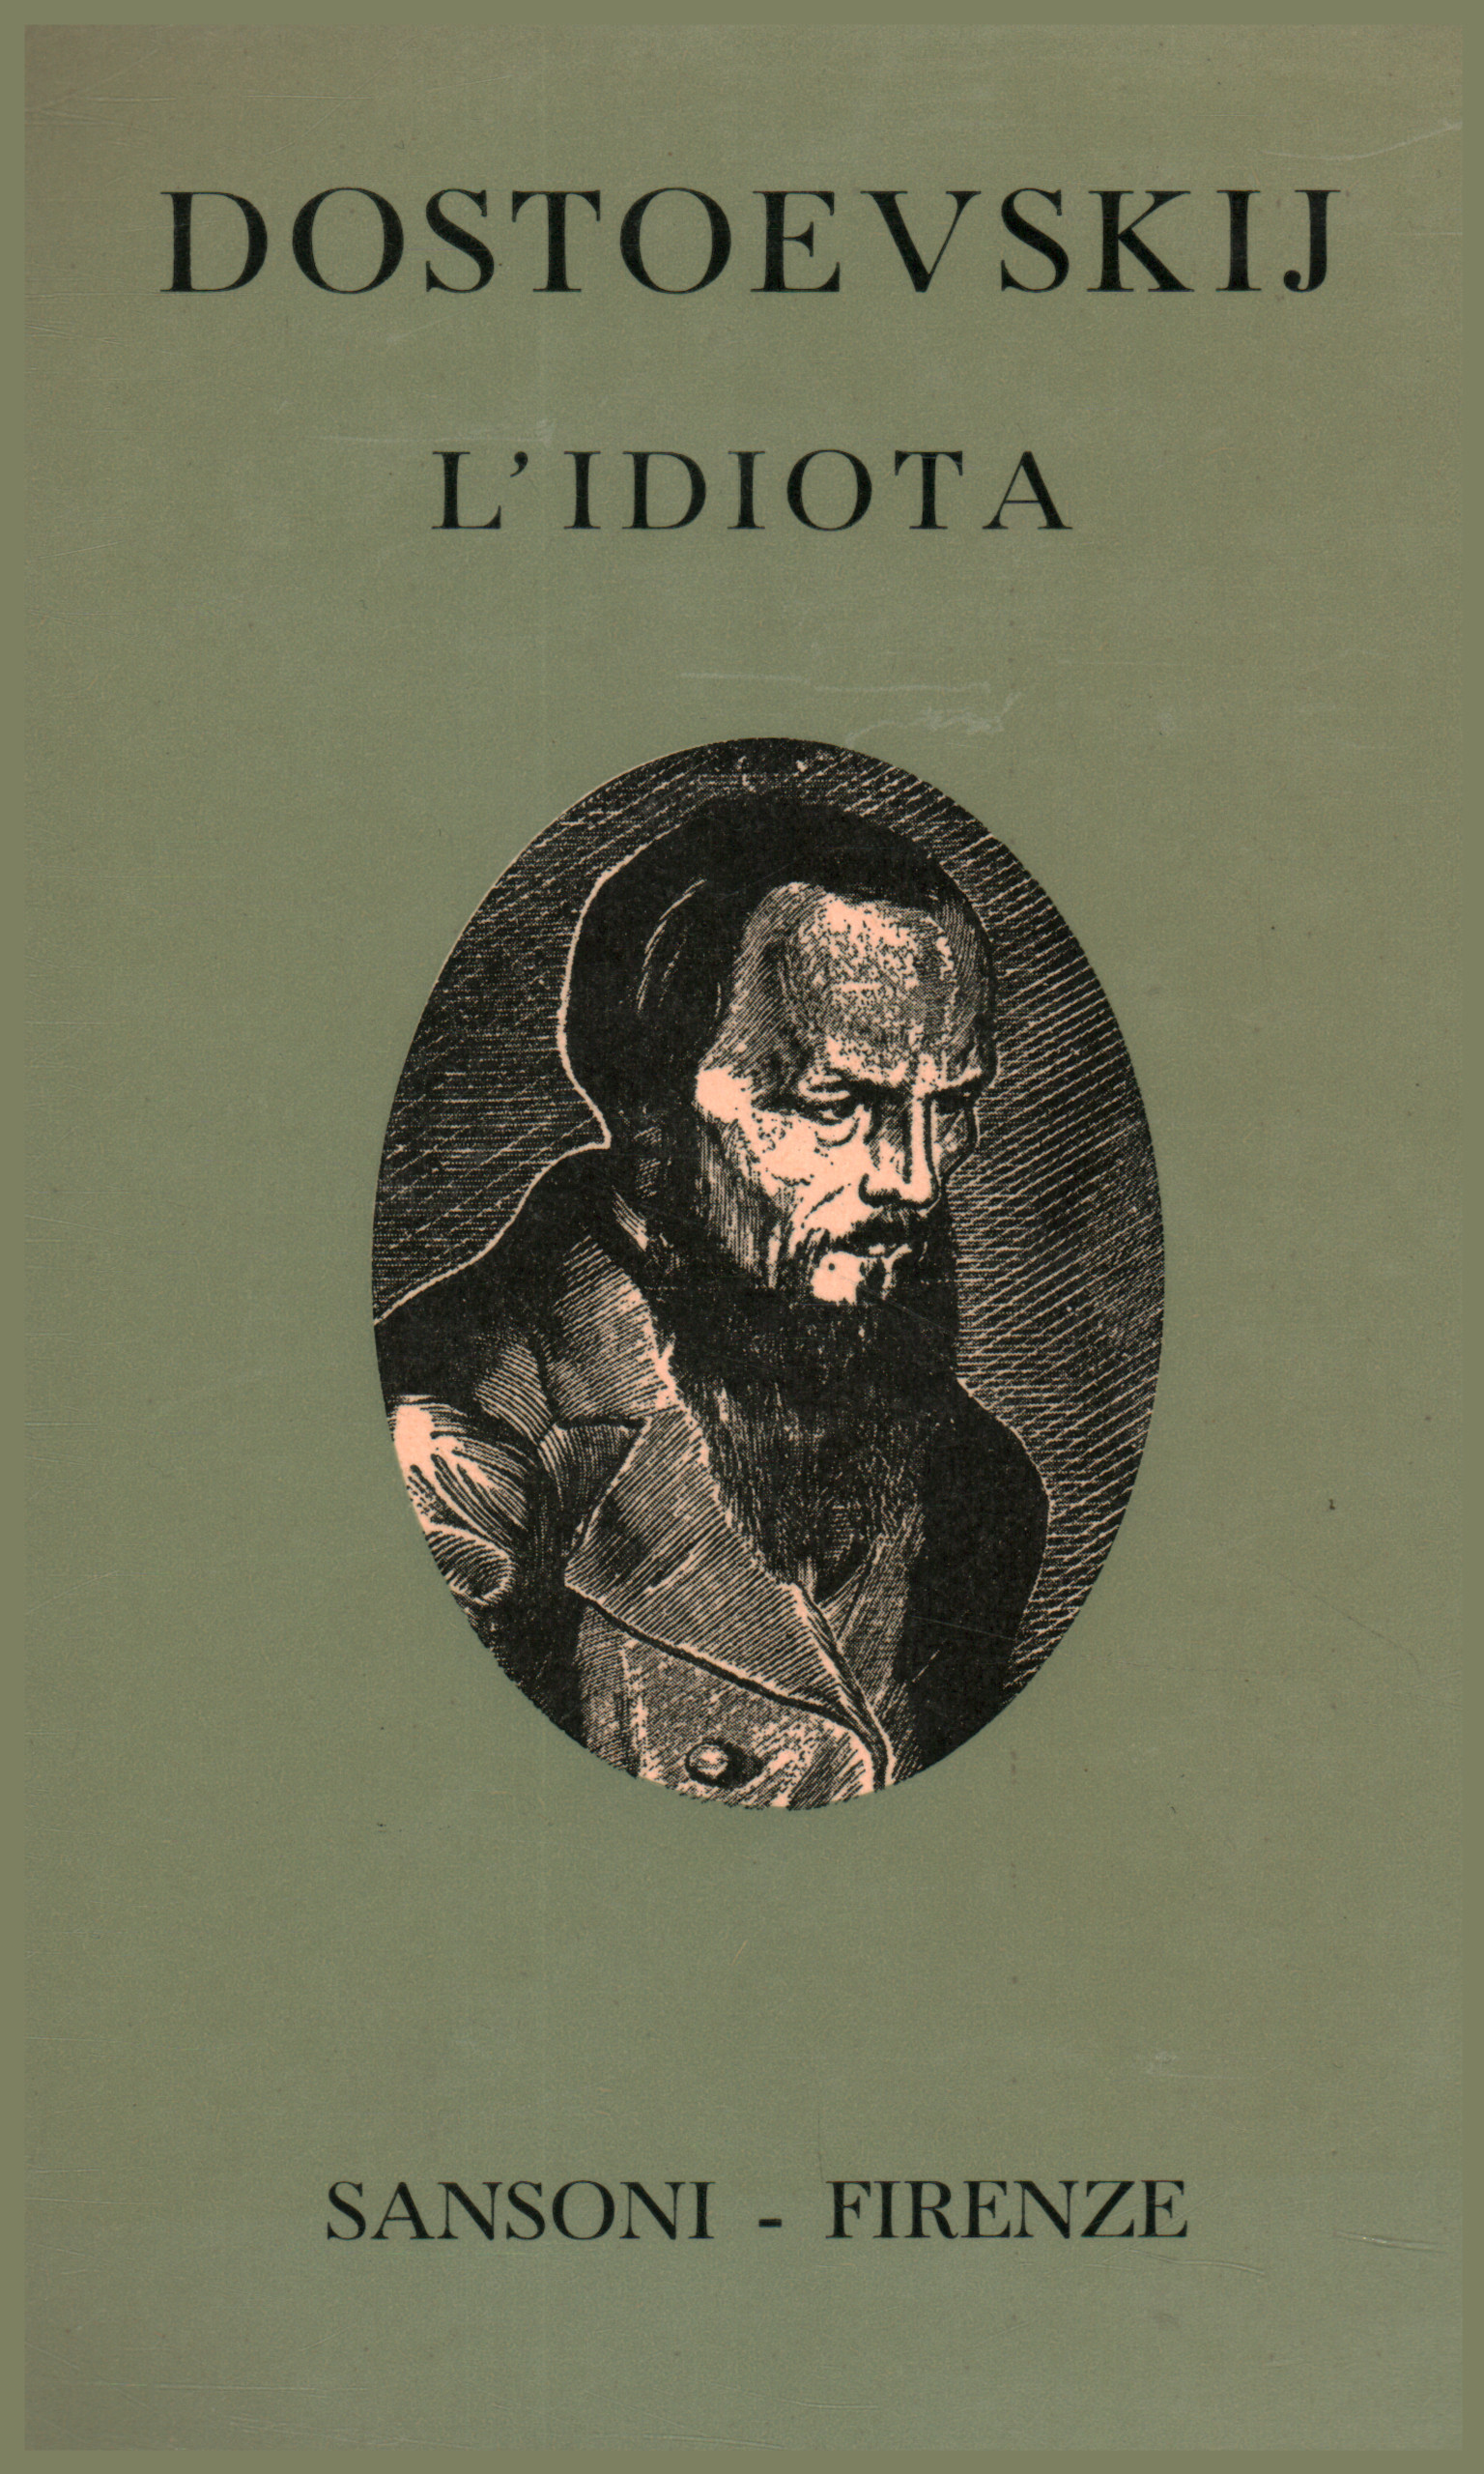 Dostoievski: novelas y cuadernos. L0apostro